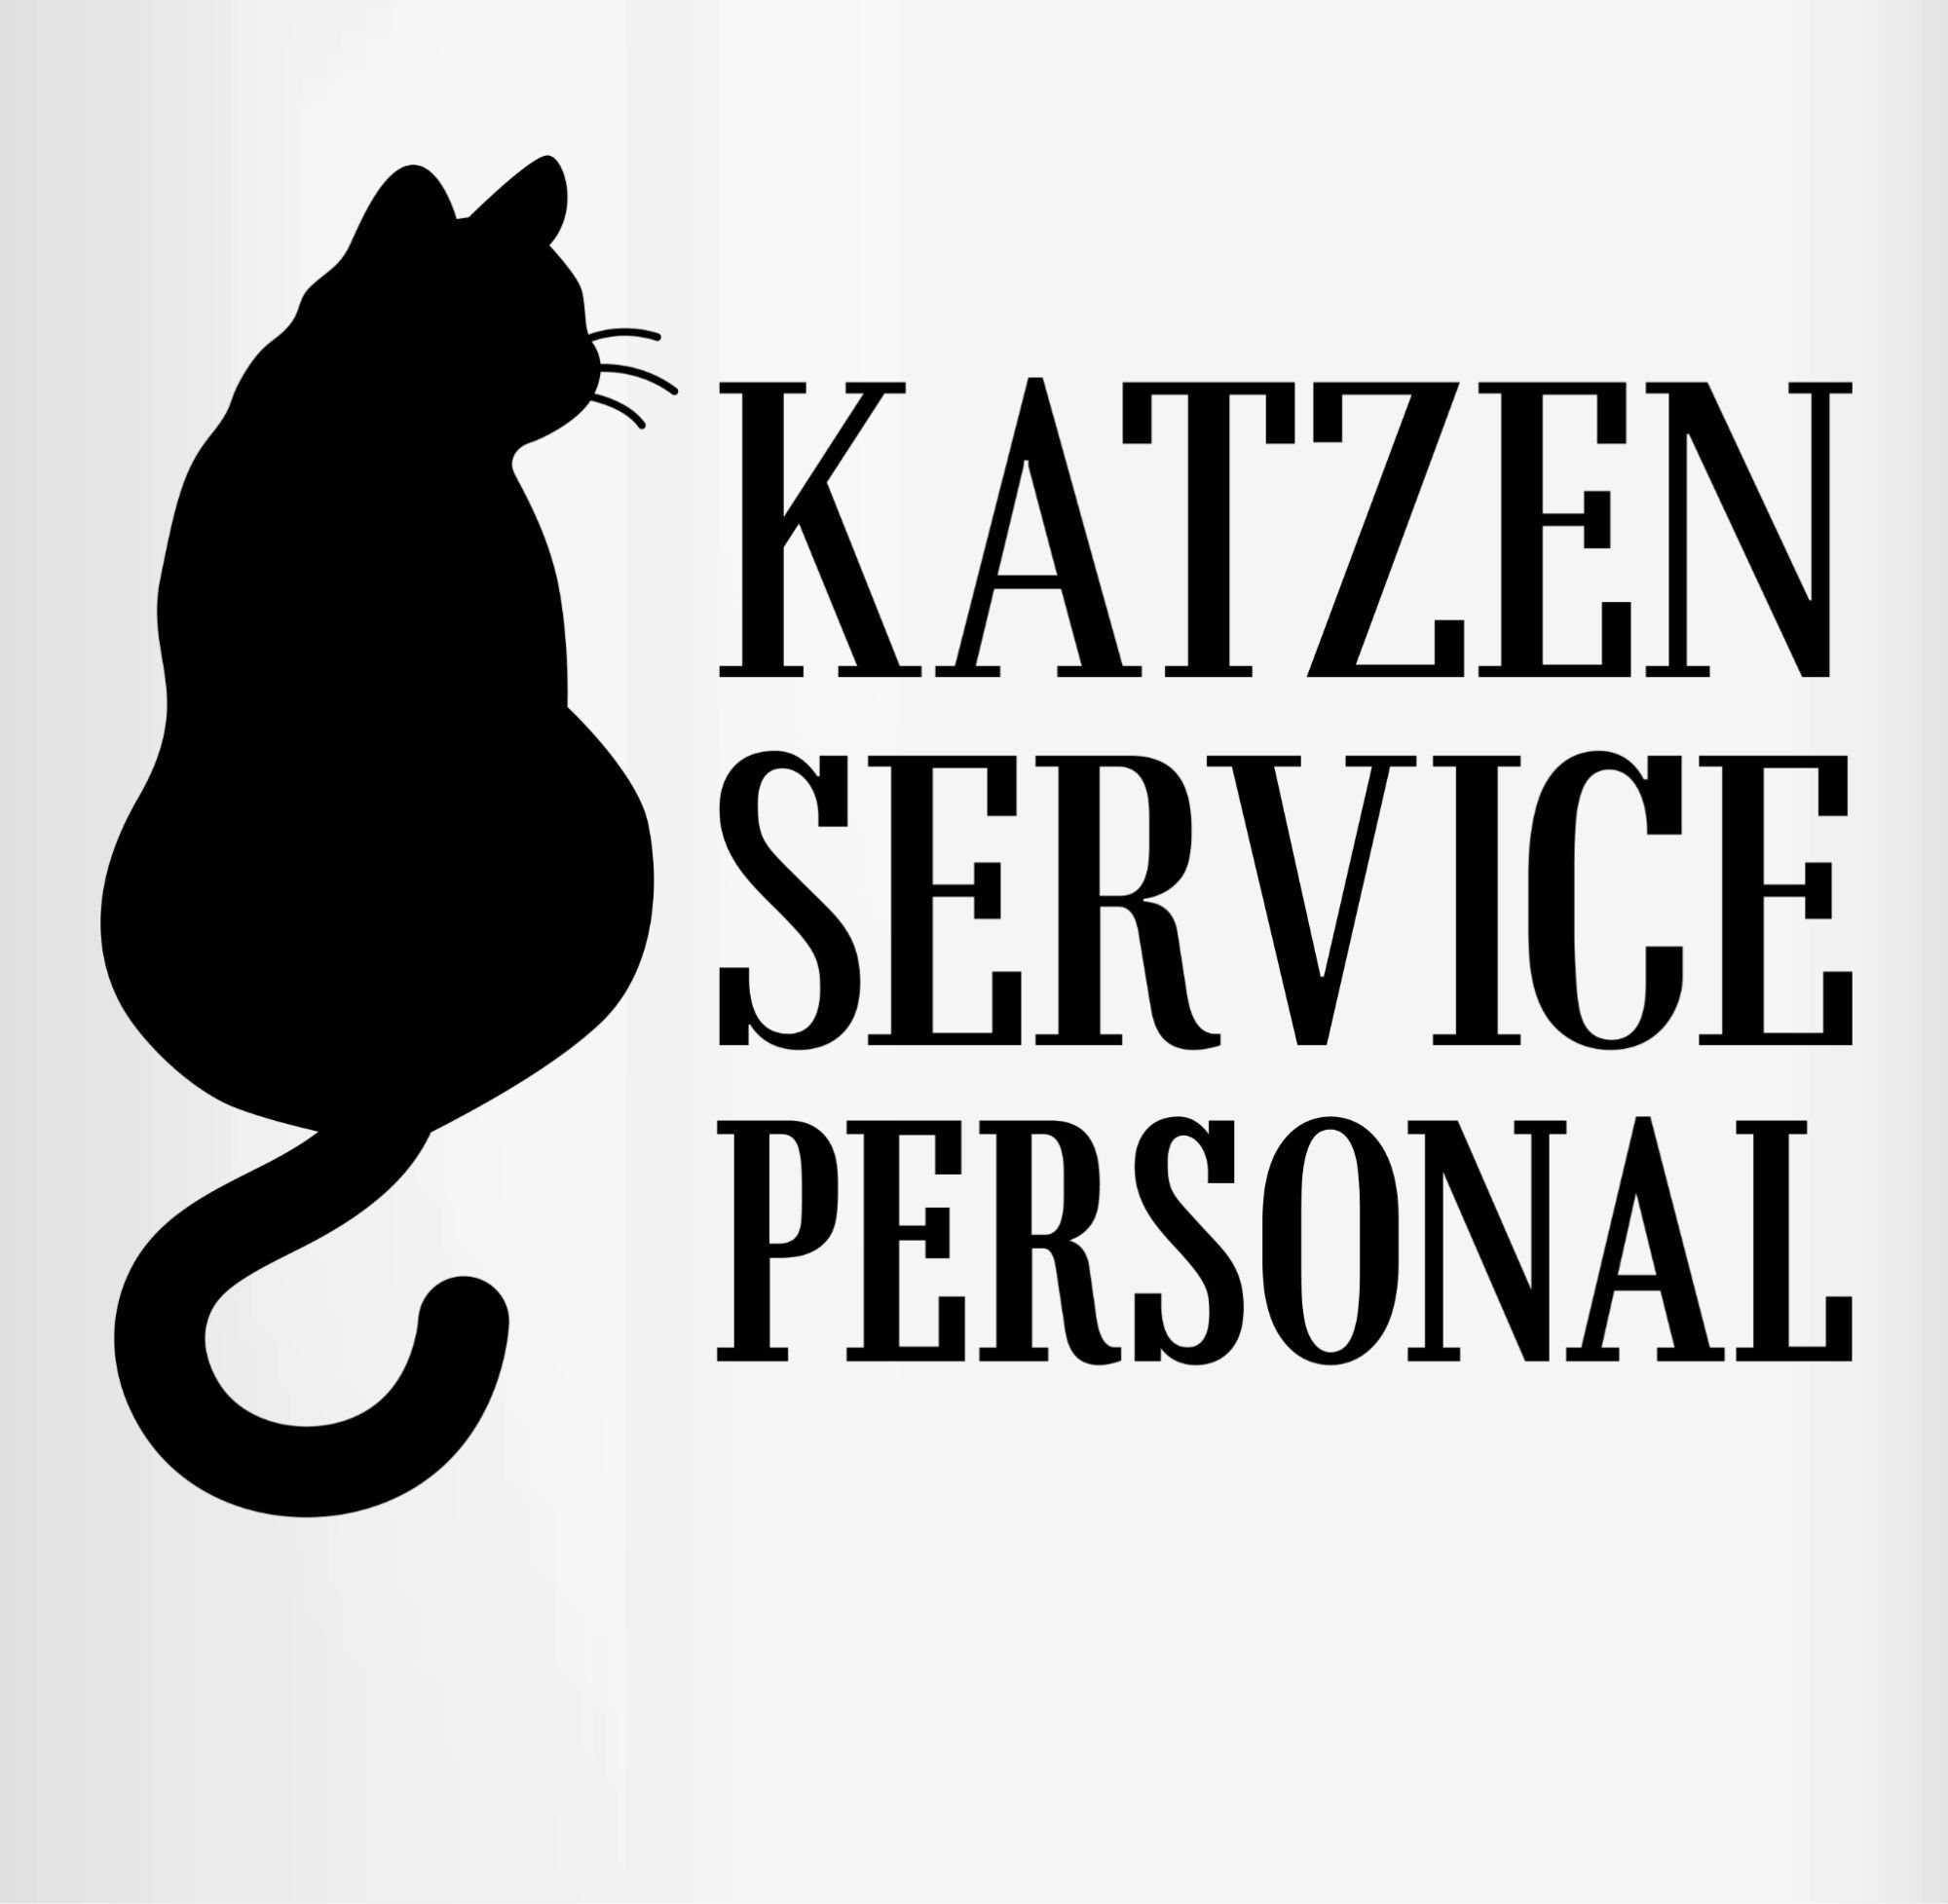 Katzen 2 Statement Hellgrün Tasse Servicepersonal Keramik, Shirtracer Sprüche schwarz,